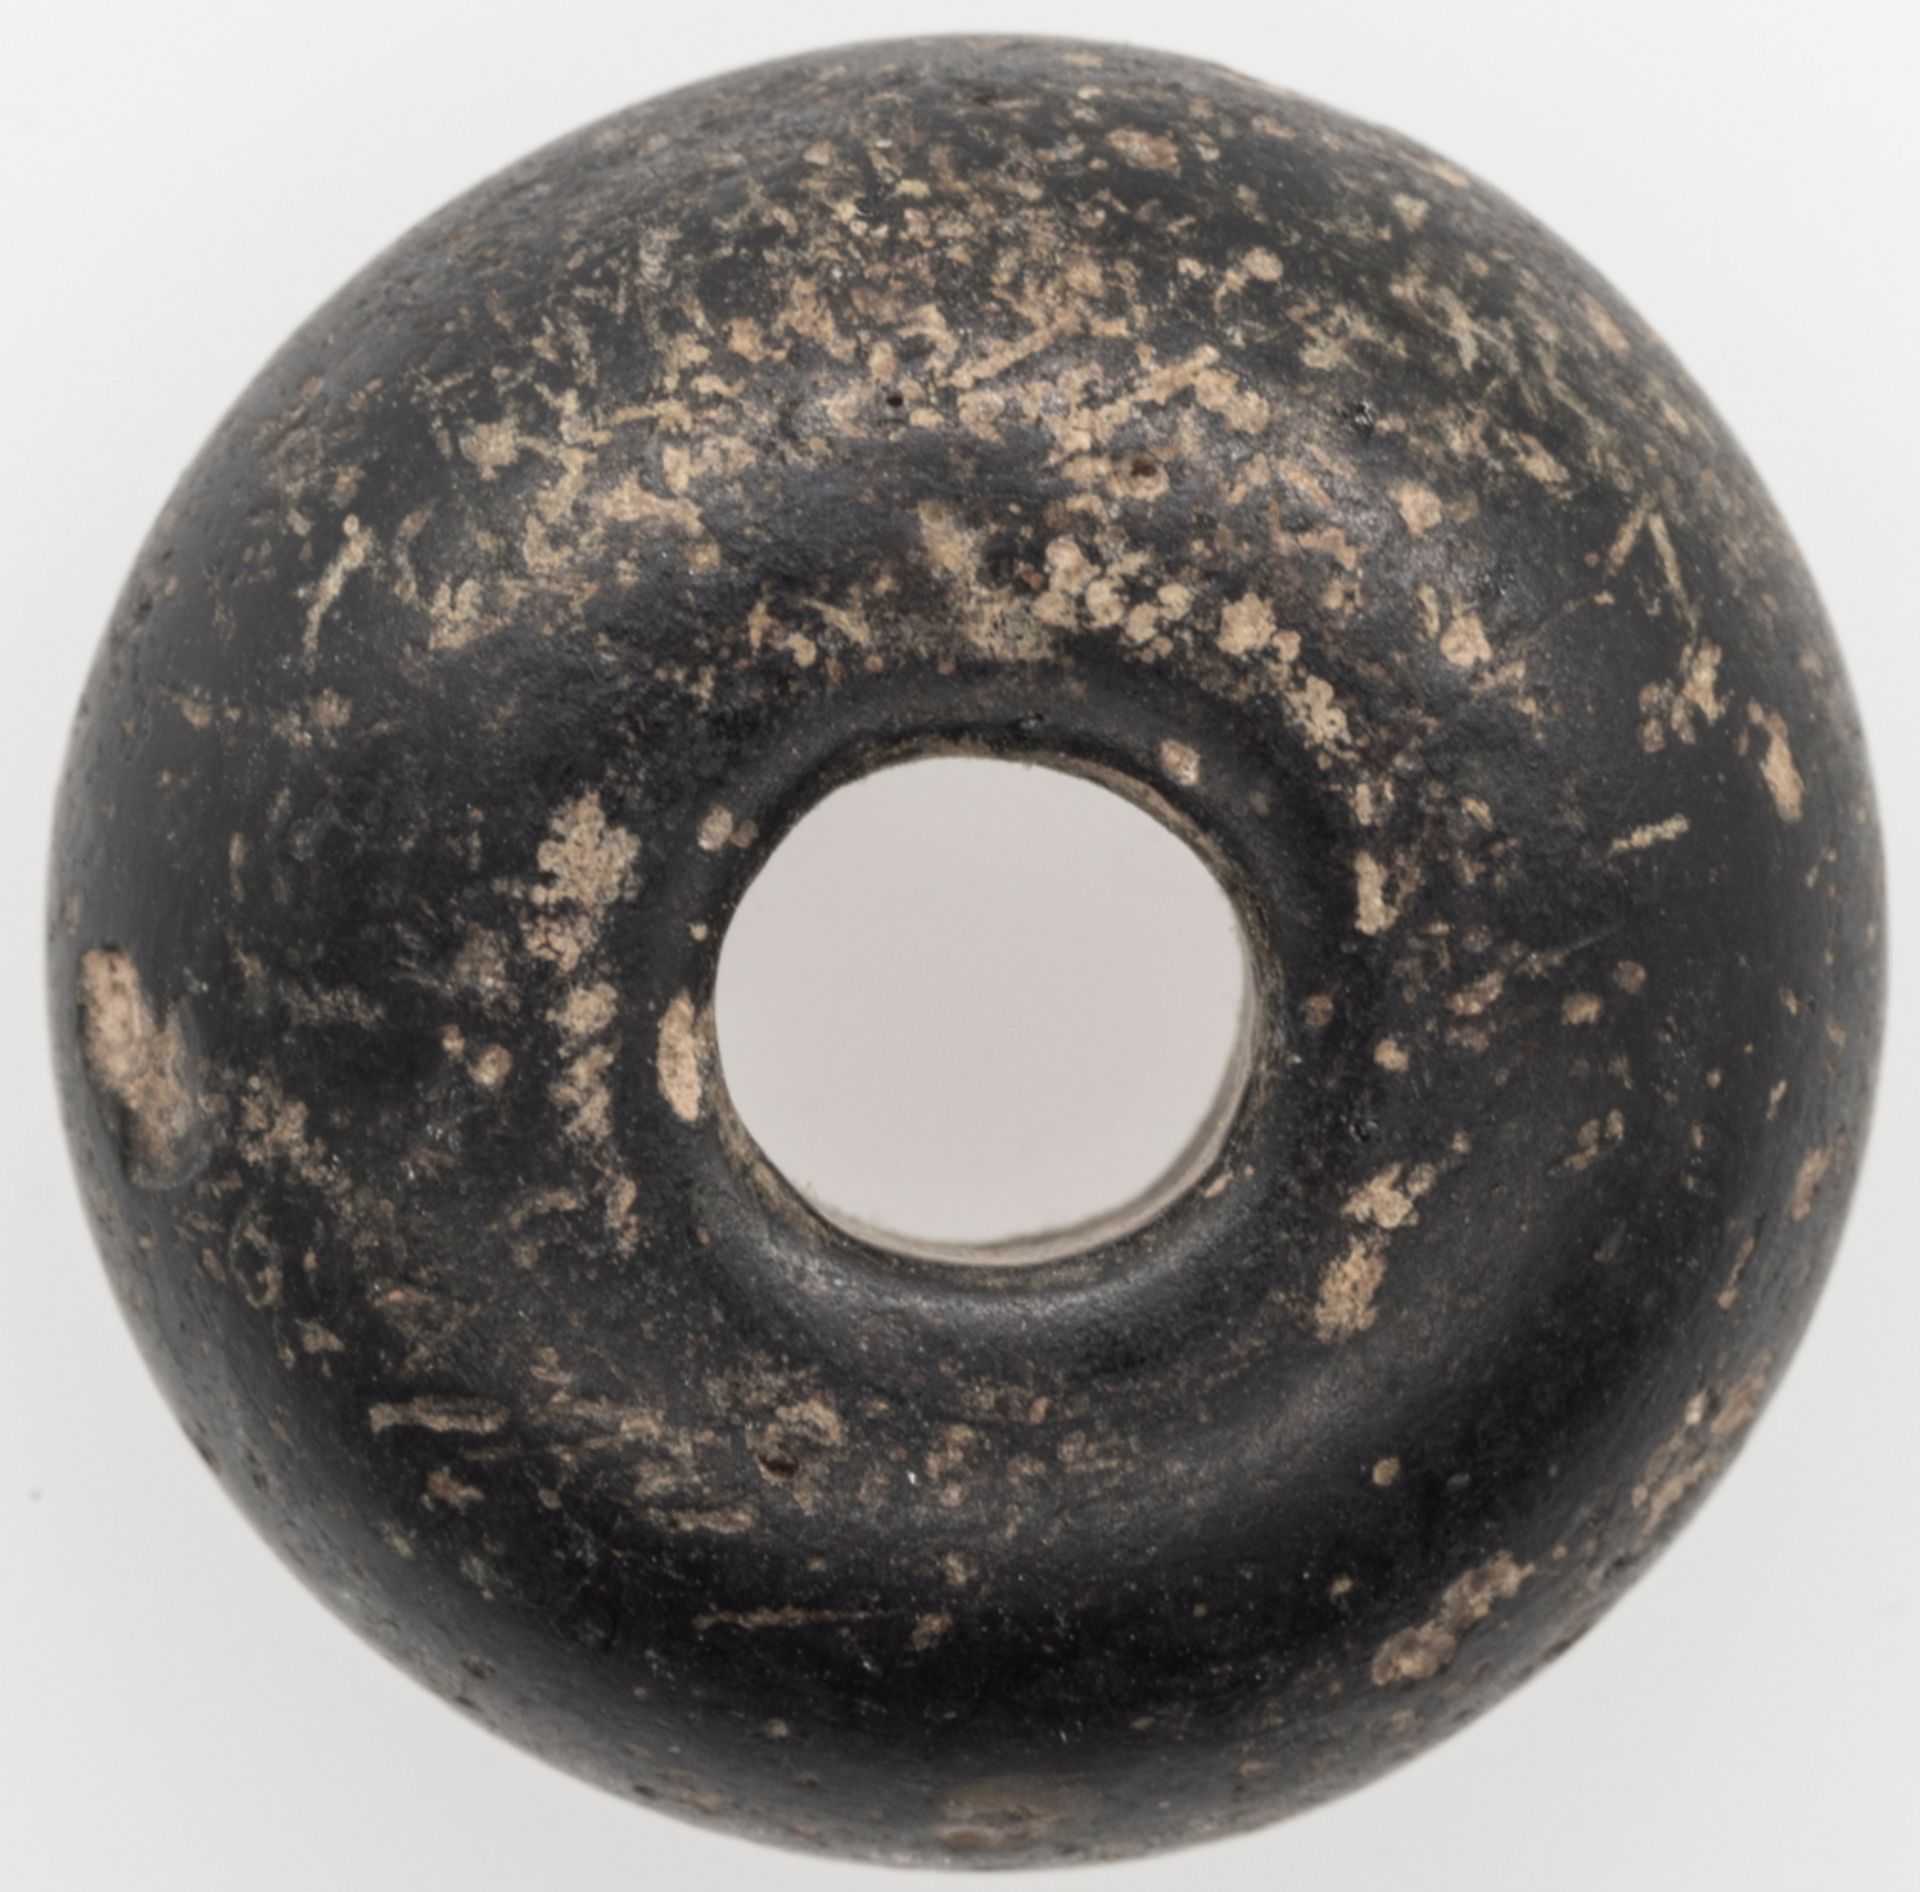 Spinnwirtel?, Material: Stein, Durchmesser: ca.19,7 mm, Stärke: ca. 9,3 mm. Gewicht: ca. 5,1 g.